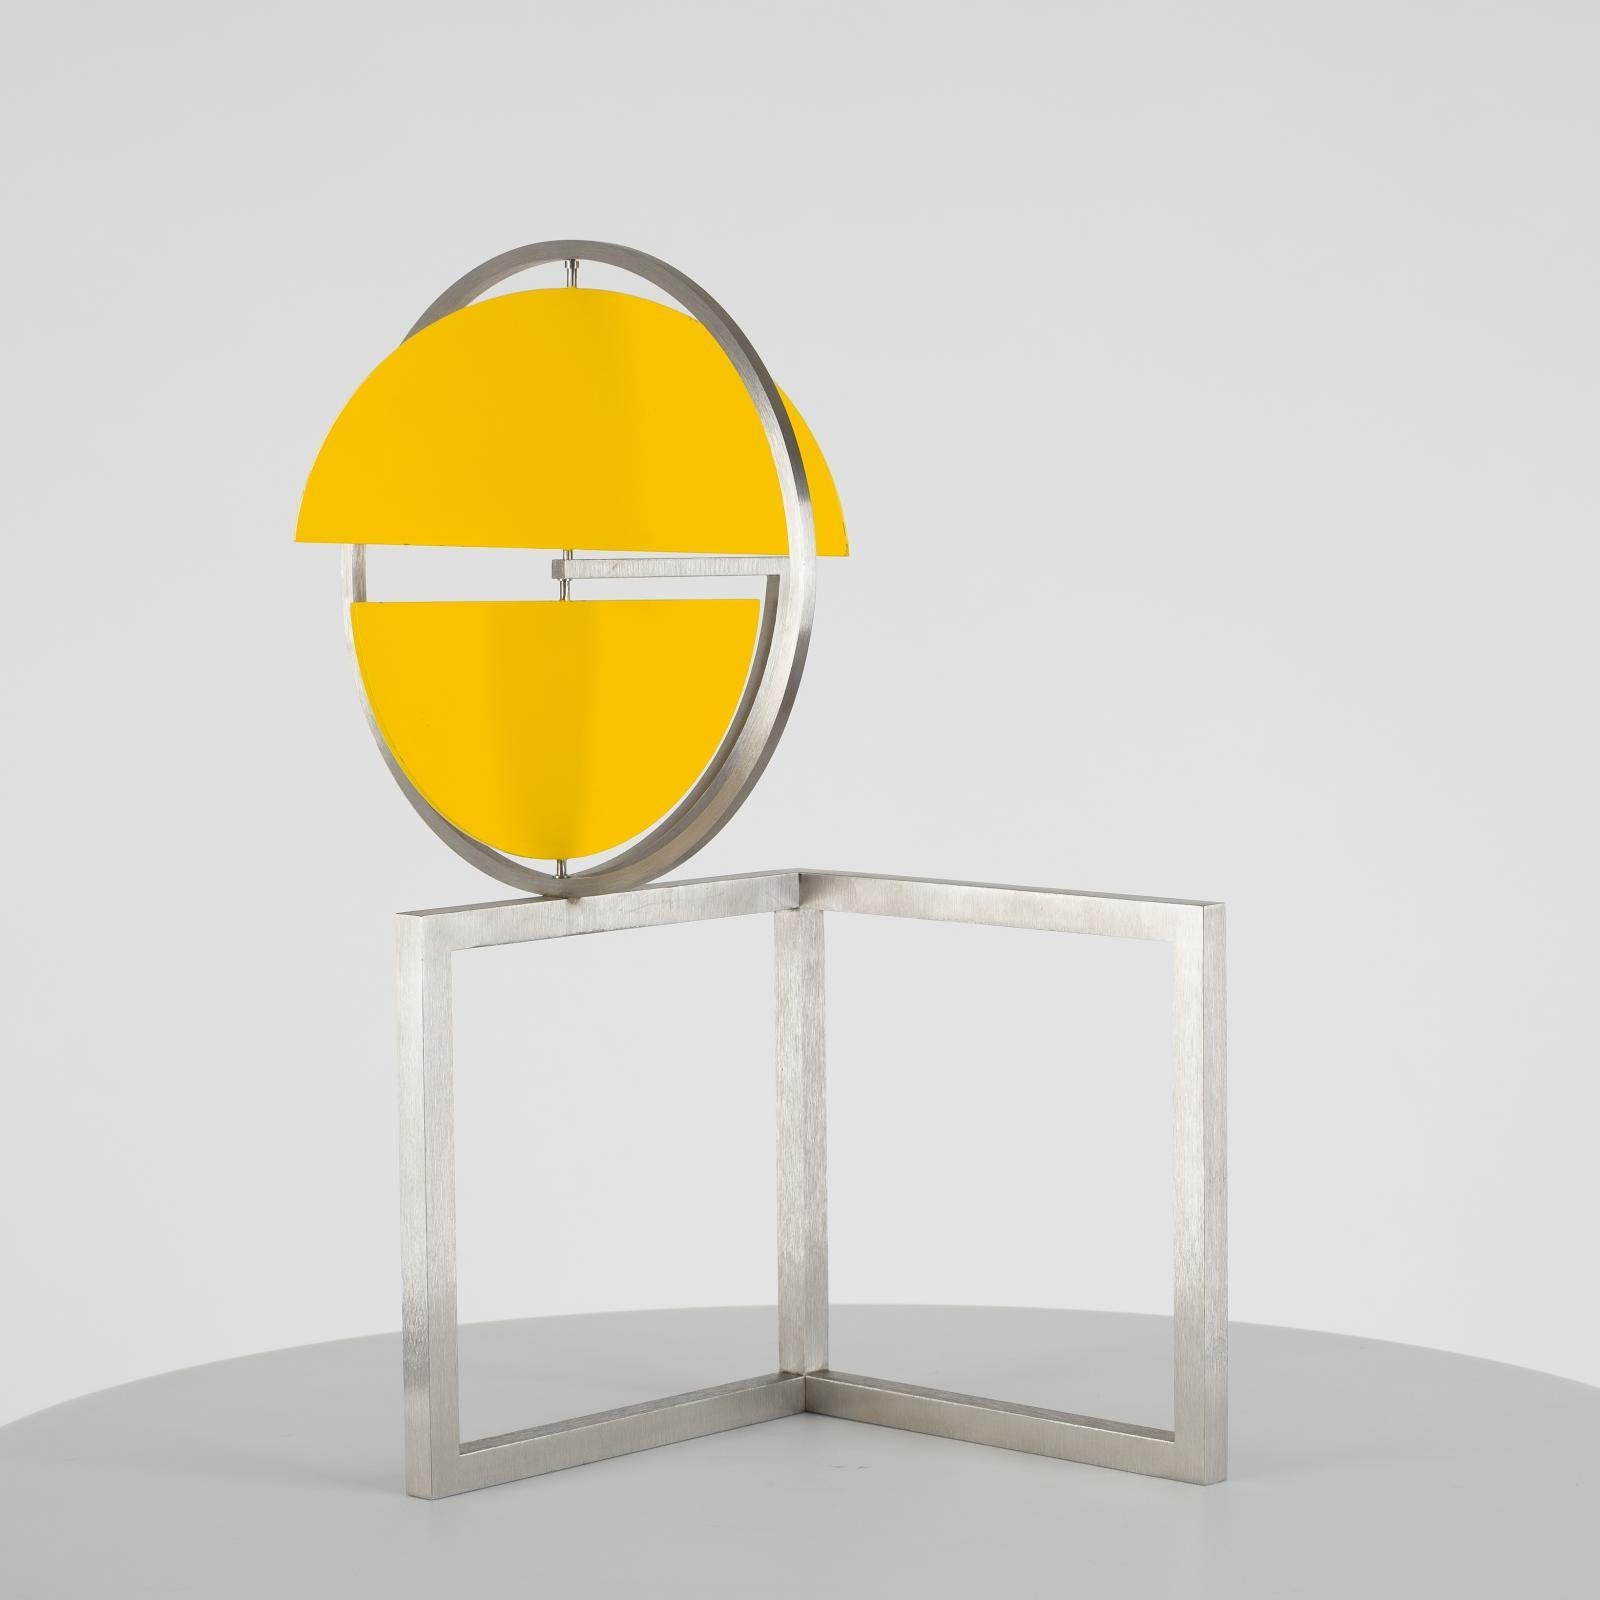 Roger Phillips Abstract Sculpture – Gelbe Scheibenscheiben auf zwei Quadraten, kinetische Skulptur